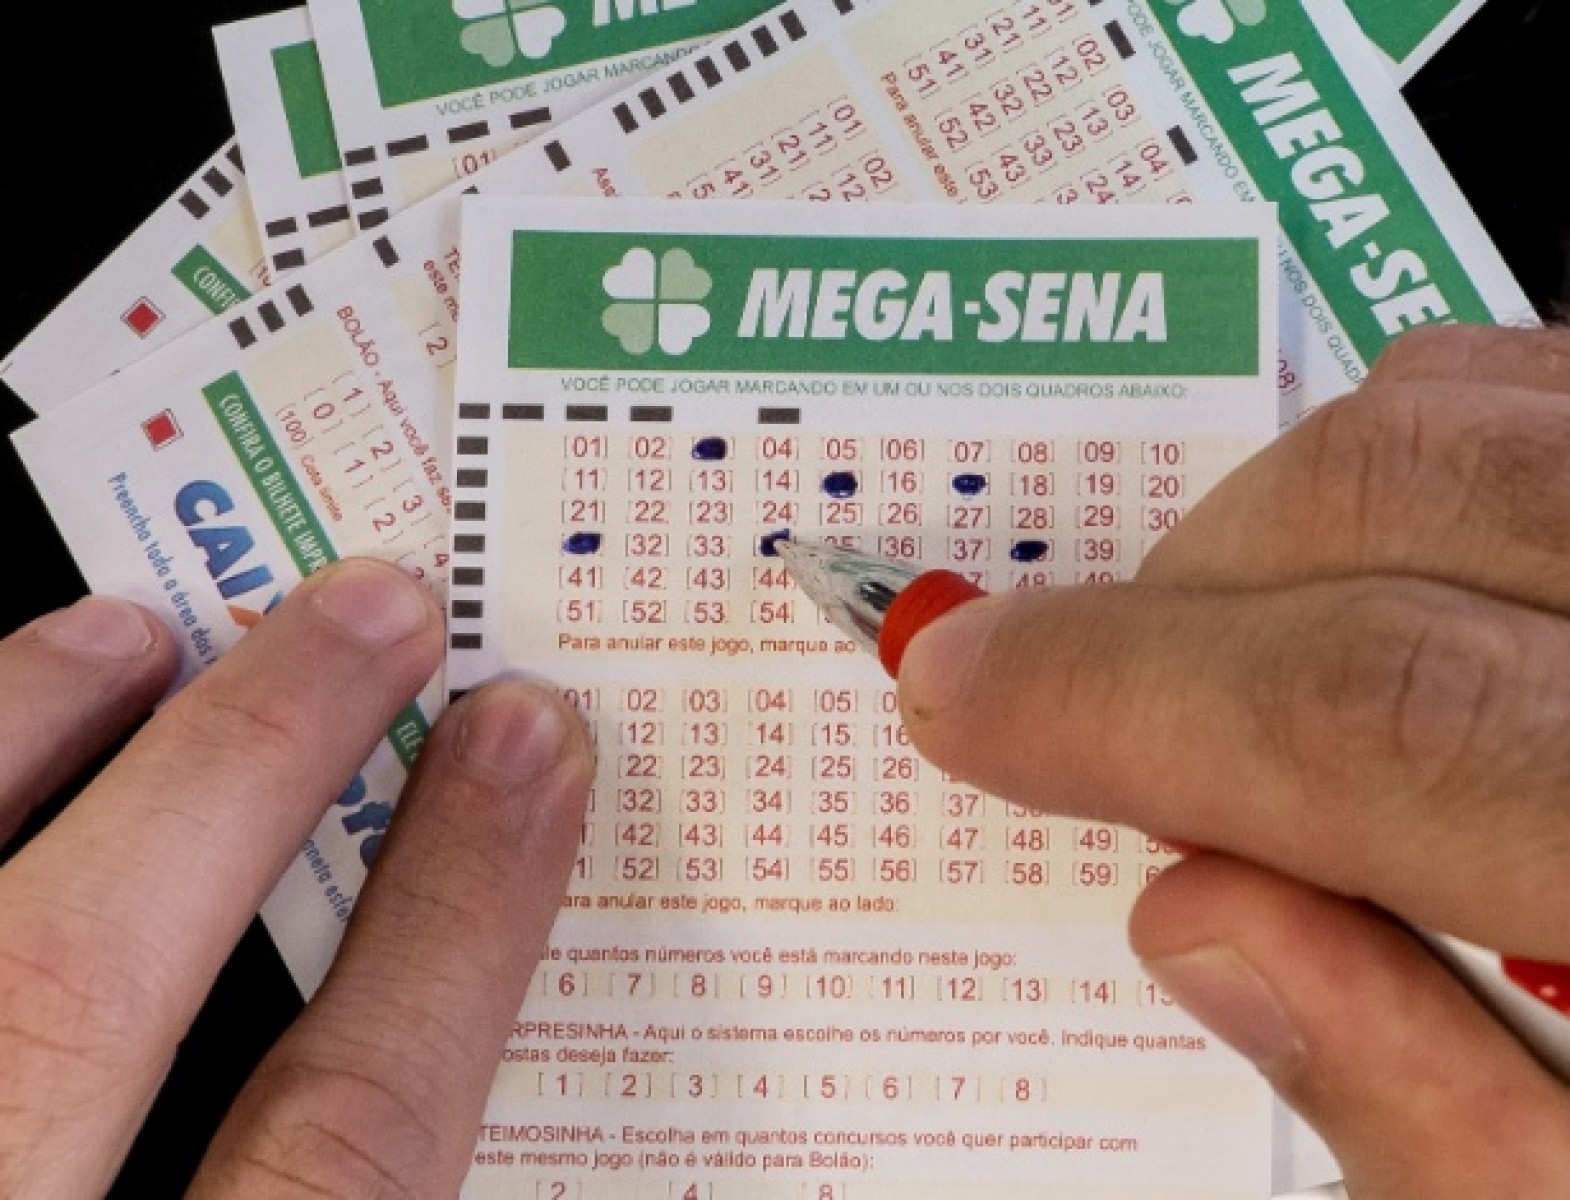 RCT Loterias - MEGA-SENA 51 MILHÕES +MILIONÁRIA 50 MILHÕES PARA 17